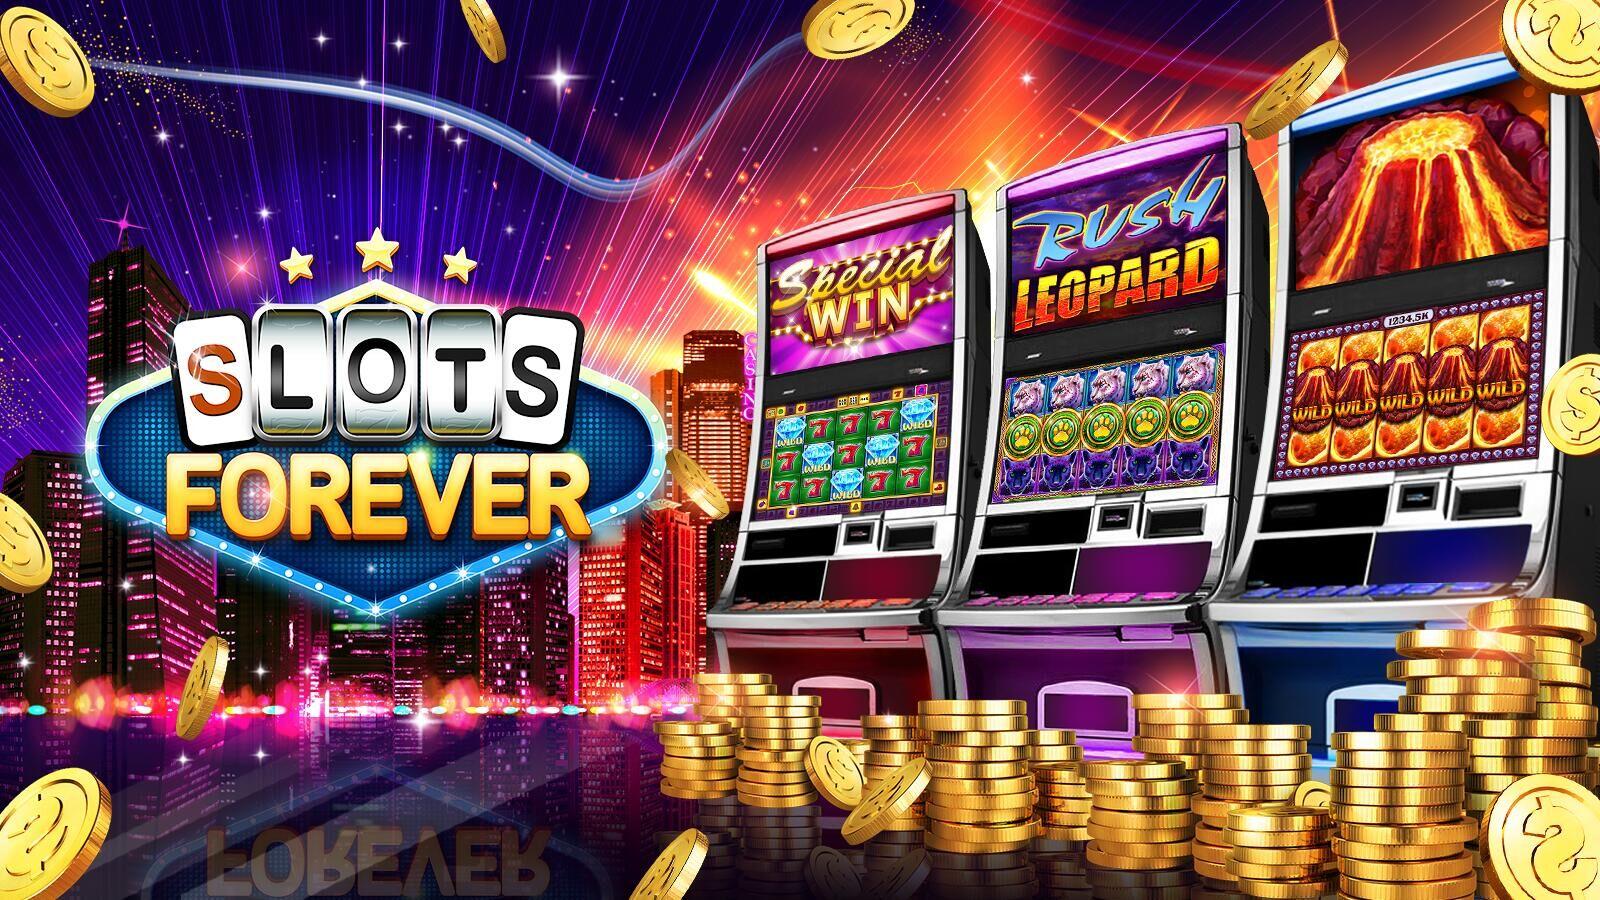 What is the bonus casino slots game - No deposit bonus